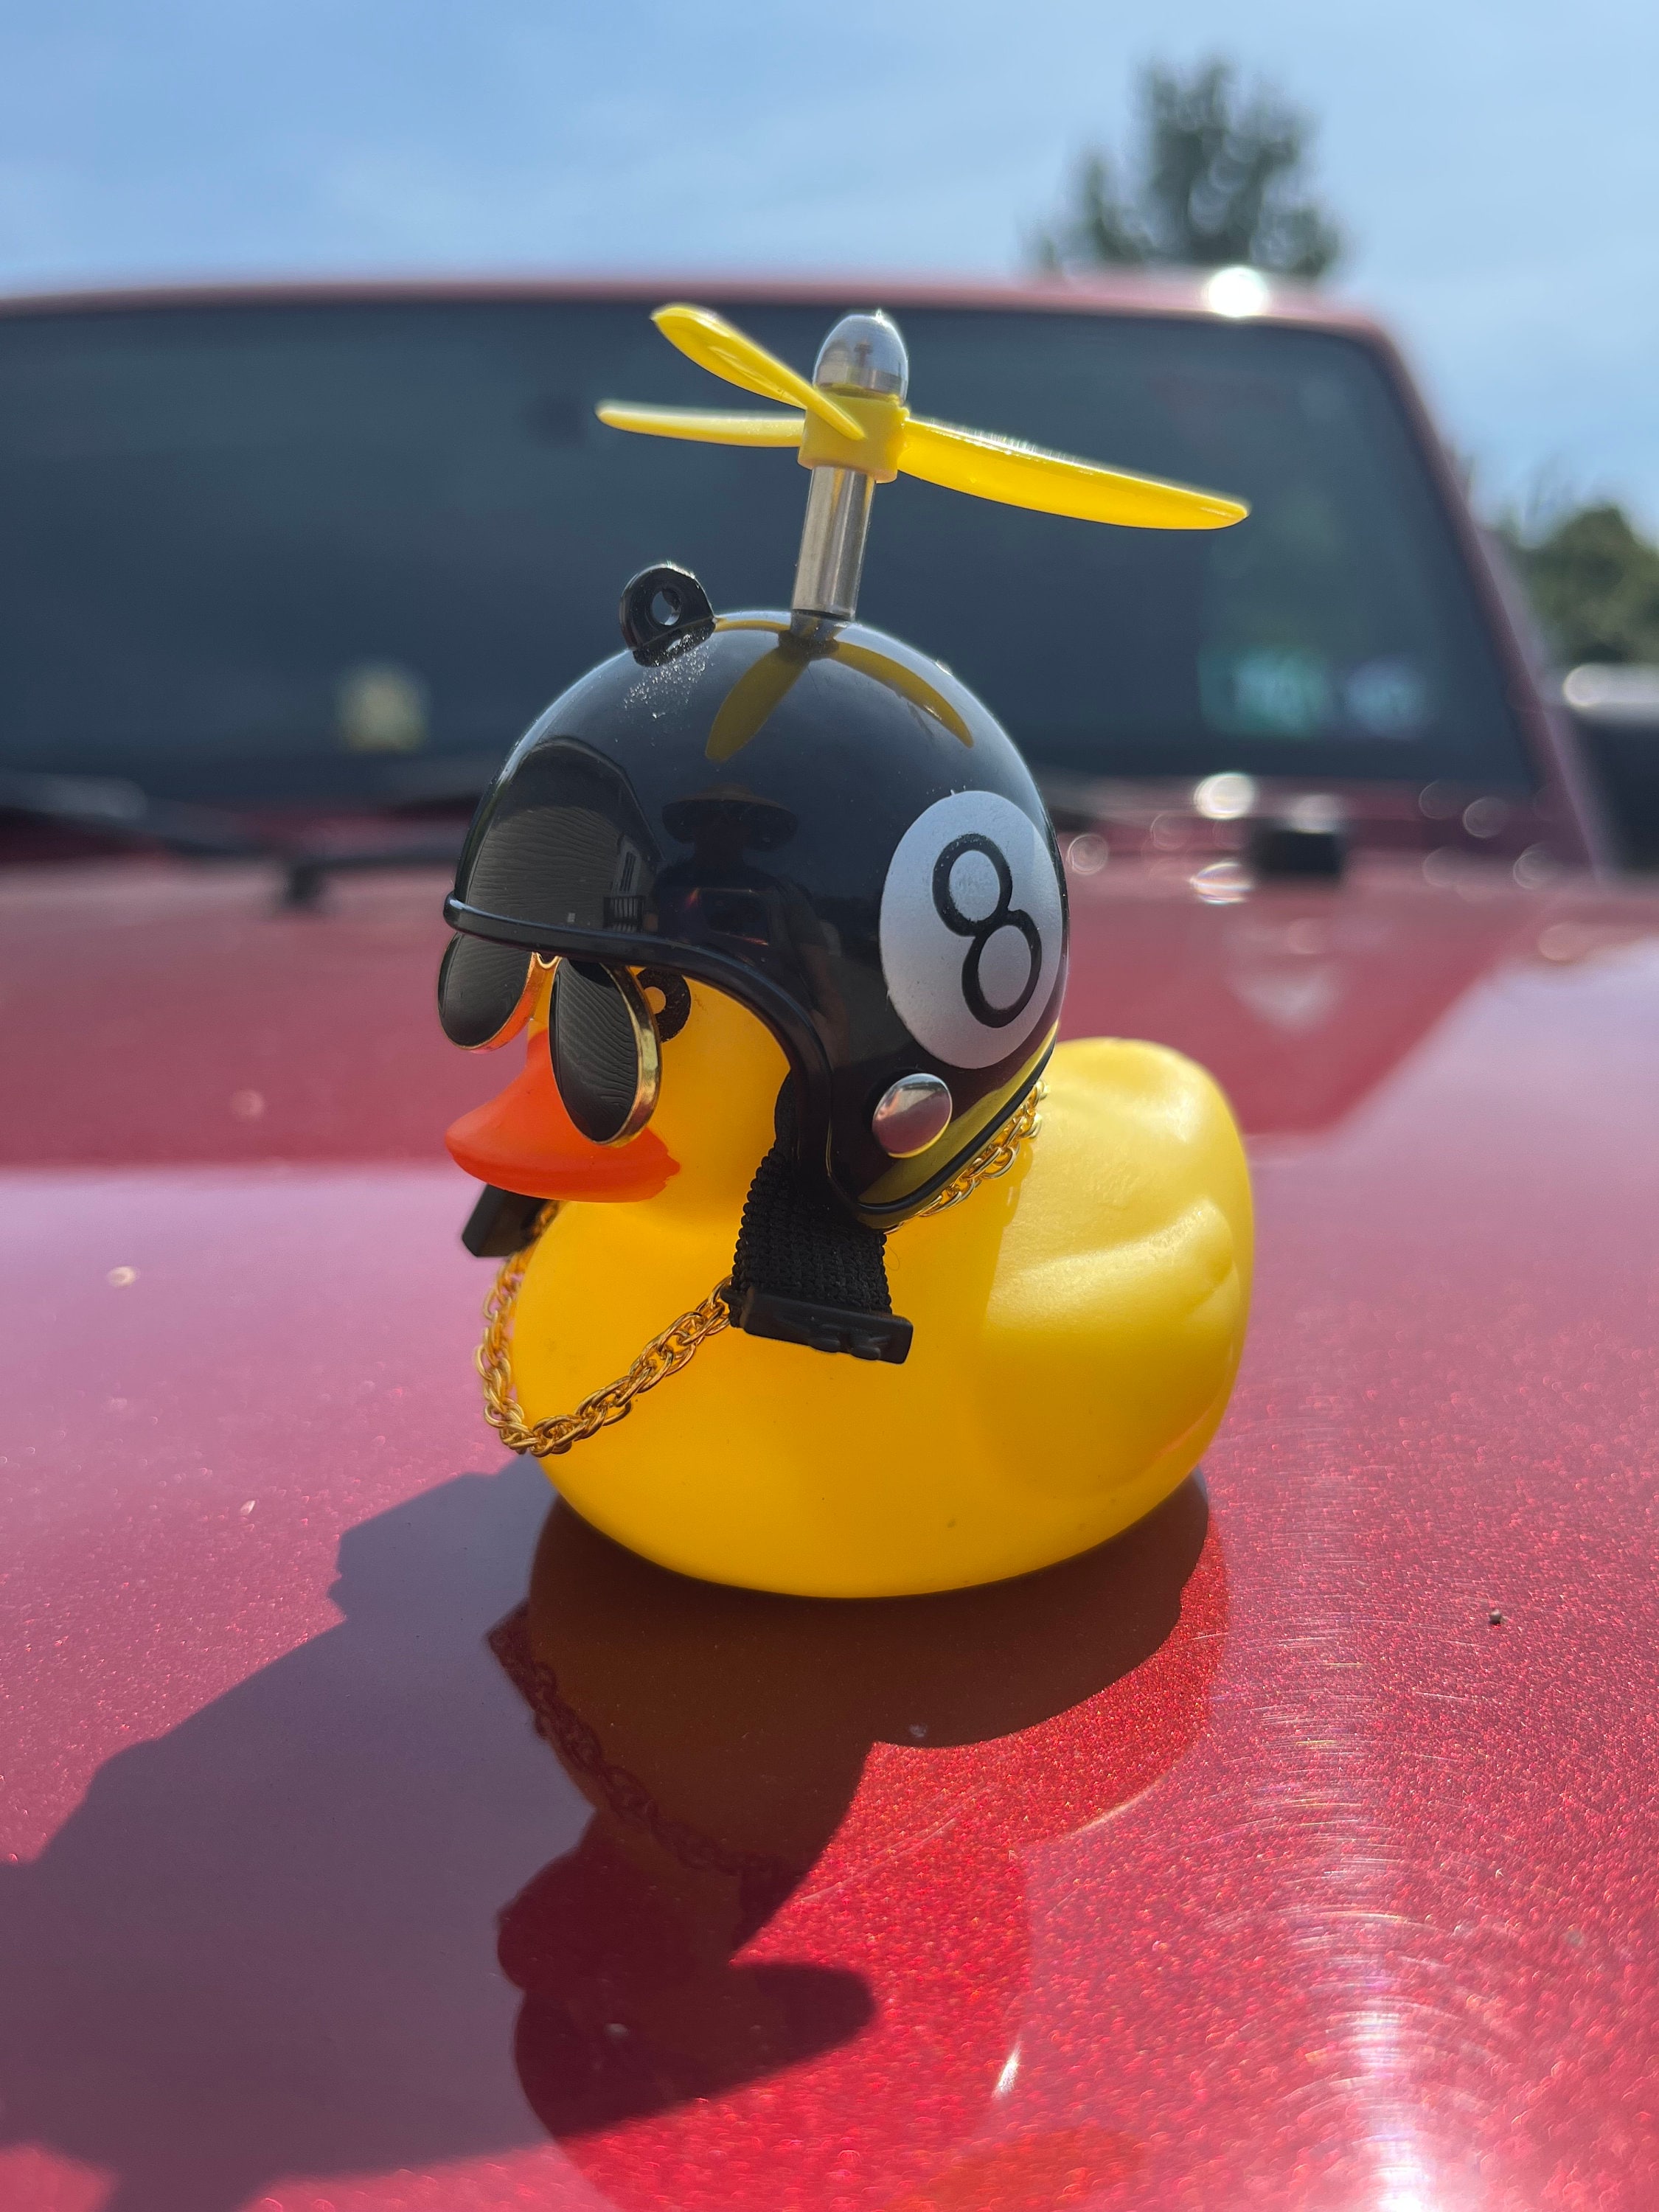 Auto Dashboard Dekoration Spielzeug Ente Mit Helm Und F6A7 U5J1